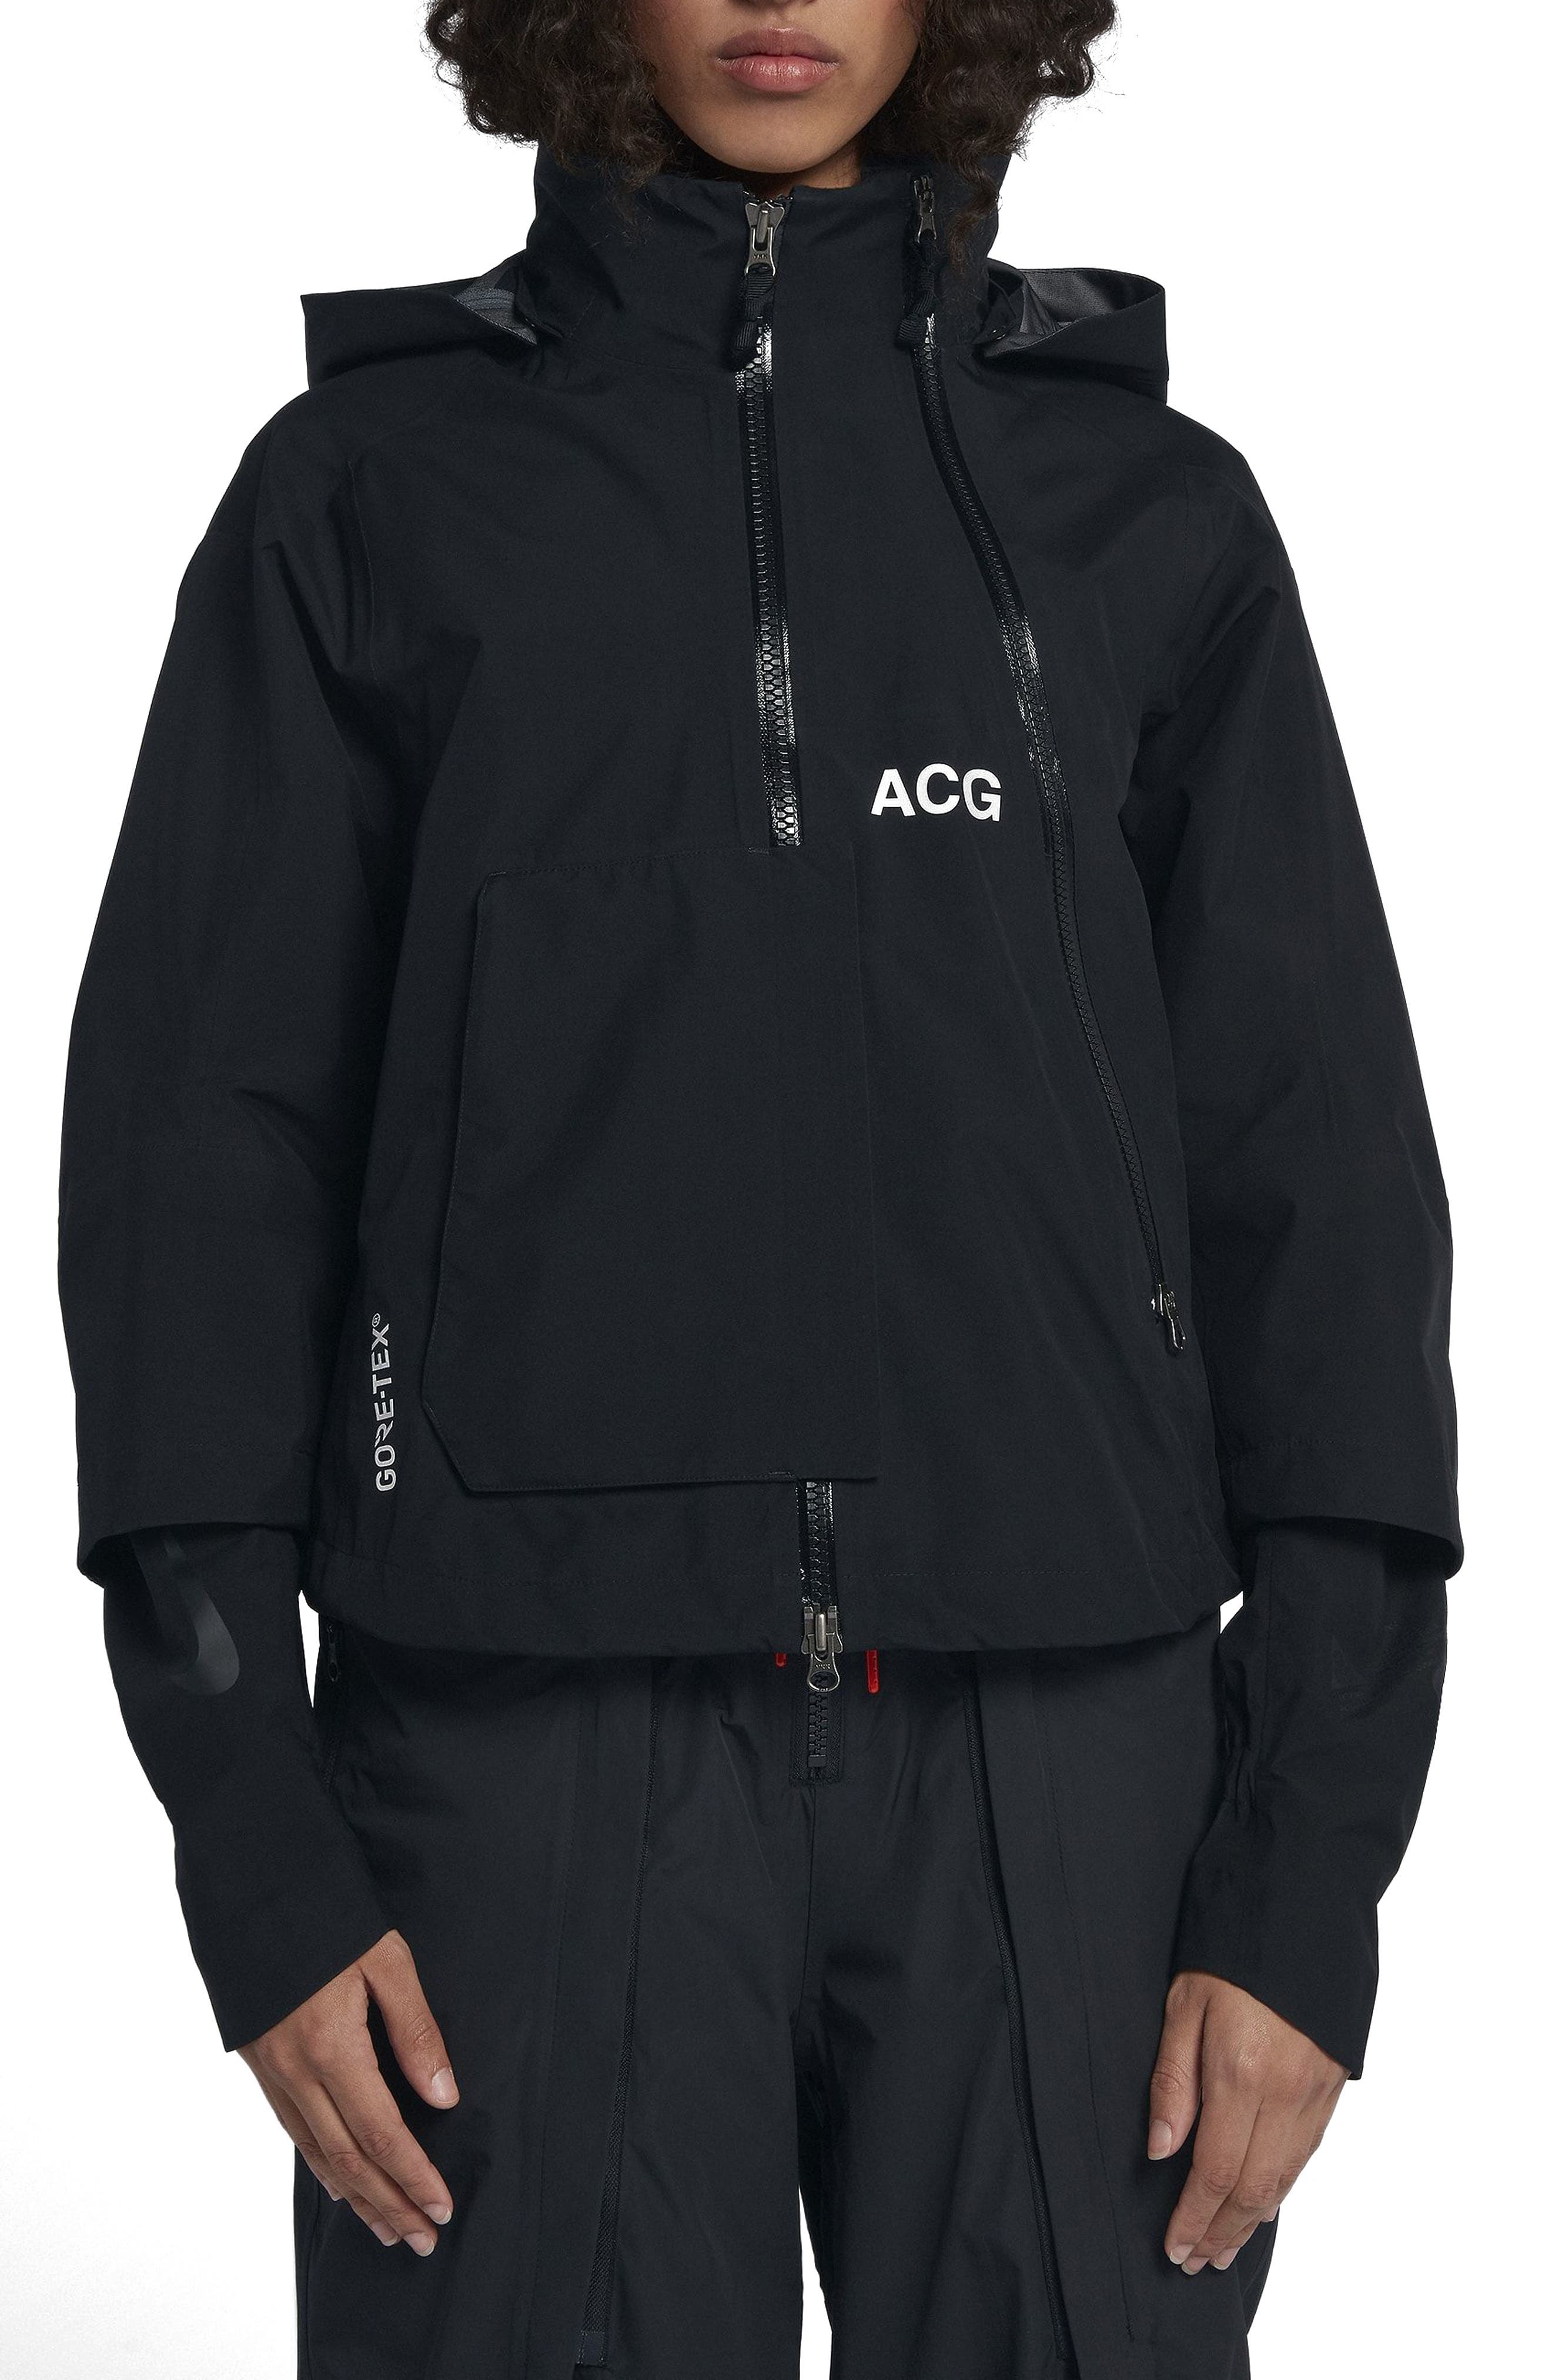 acg jacket